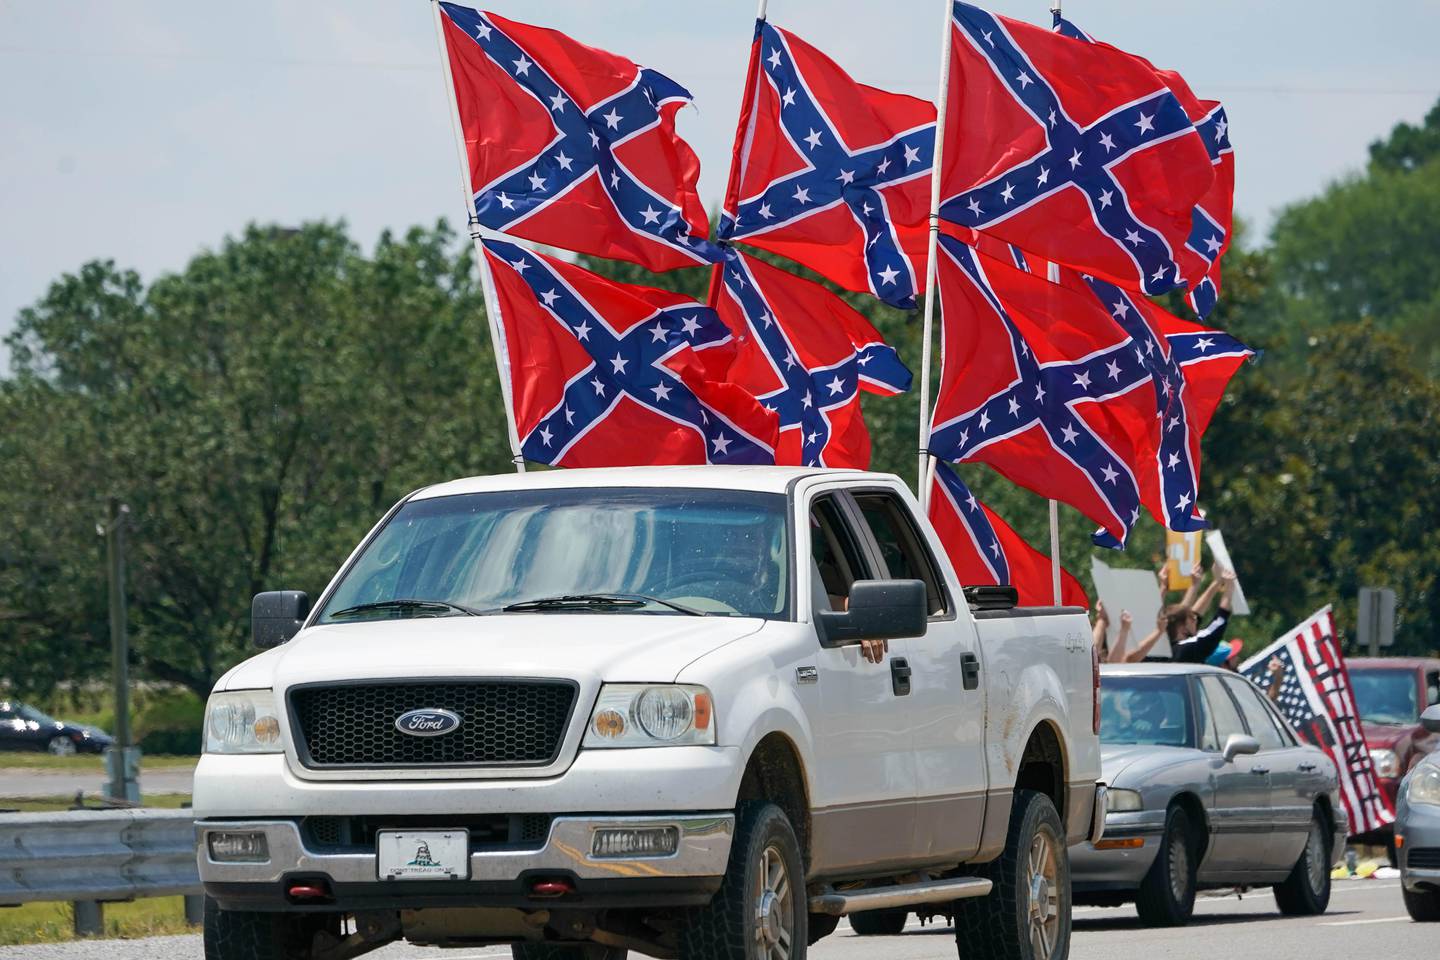 Bildet er av en pickup som har 9 synlige flagg på lasteplanet. Det er sørstats-flagg. De er røde, med et blått kryss som går fra hjørne til hjørne. I krysset er det hvite stjerner. Noen mener det er et flagg som handler om frihet. For andre er det et flagg som betyr undertrykkelse og rasisme.